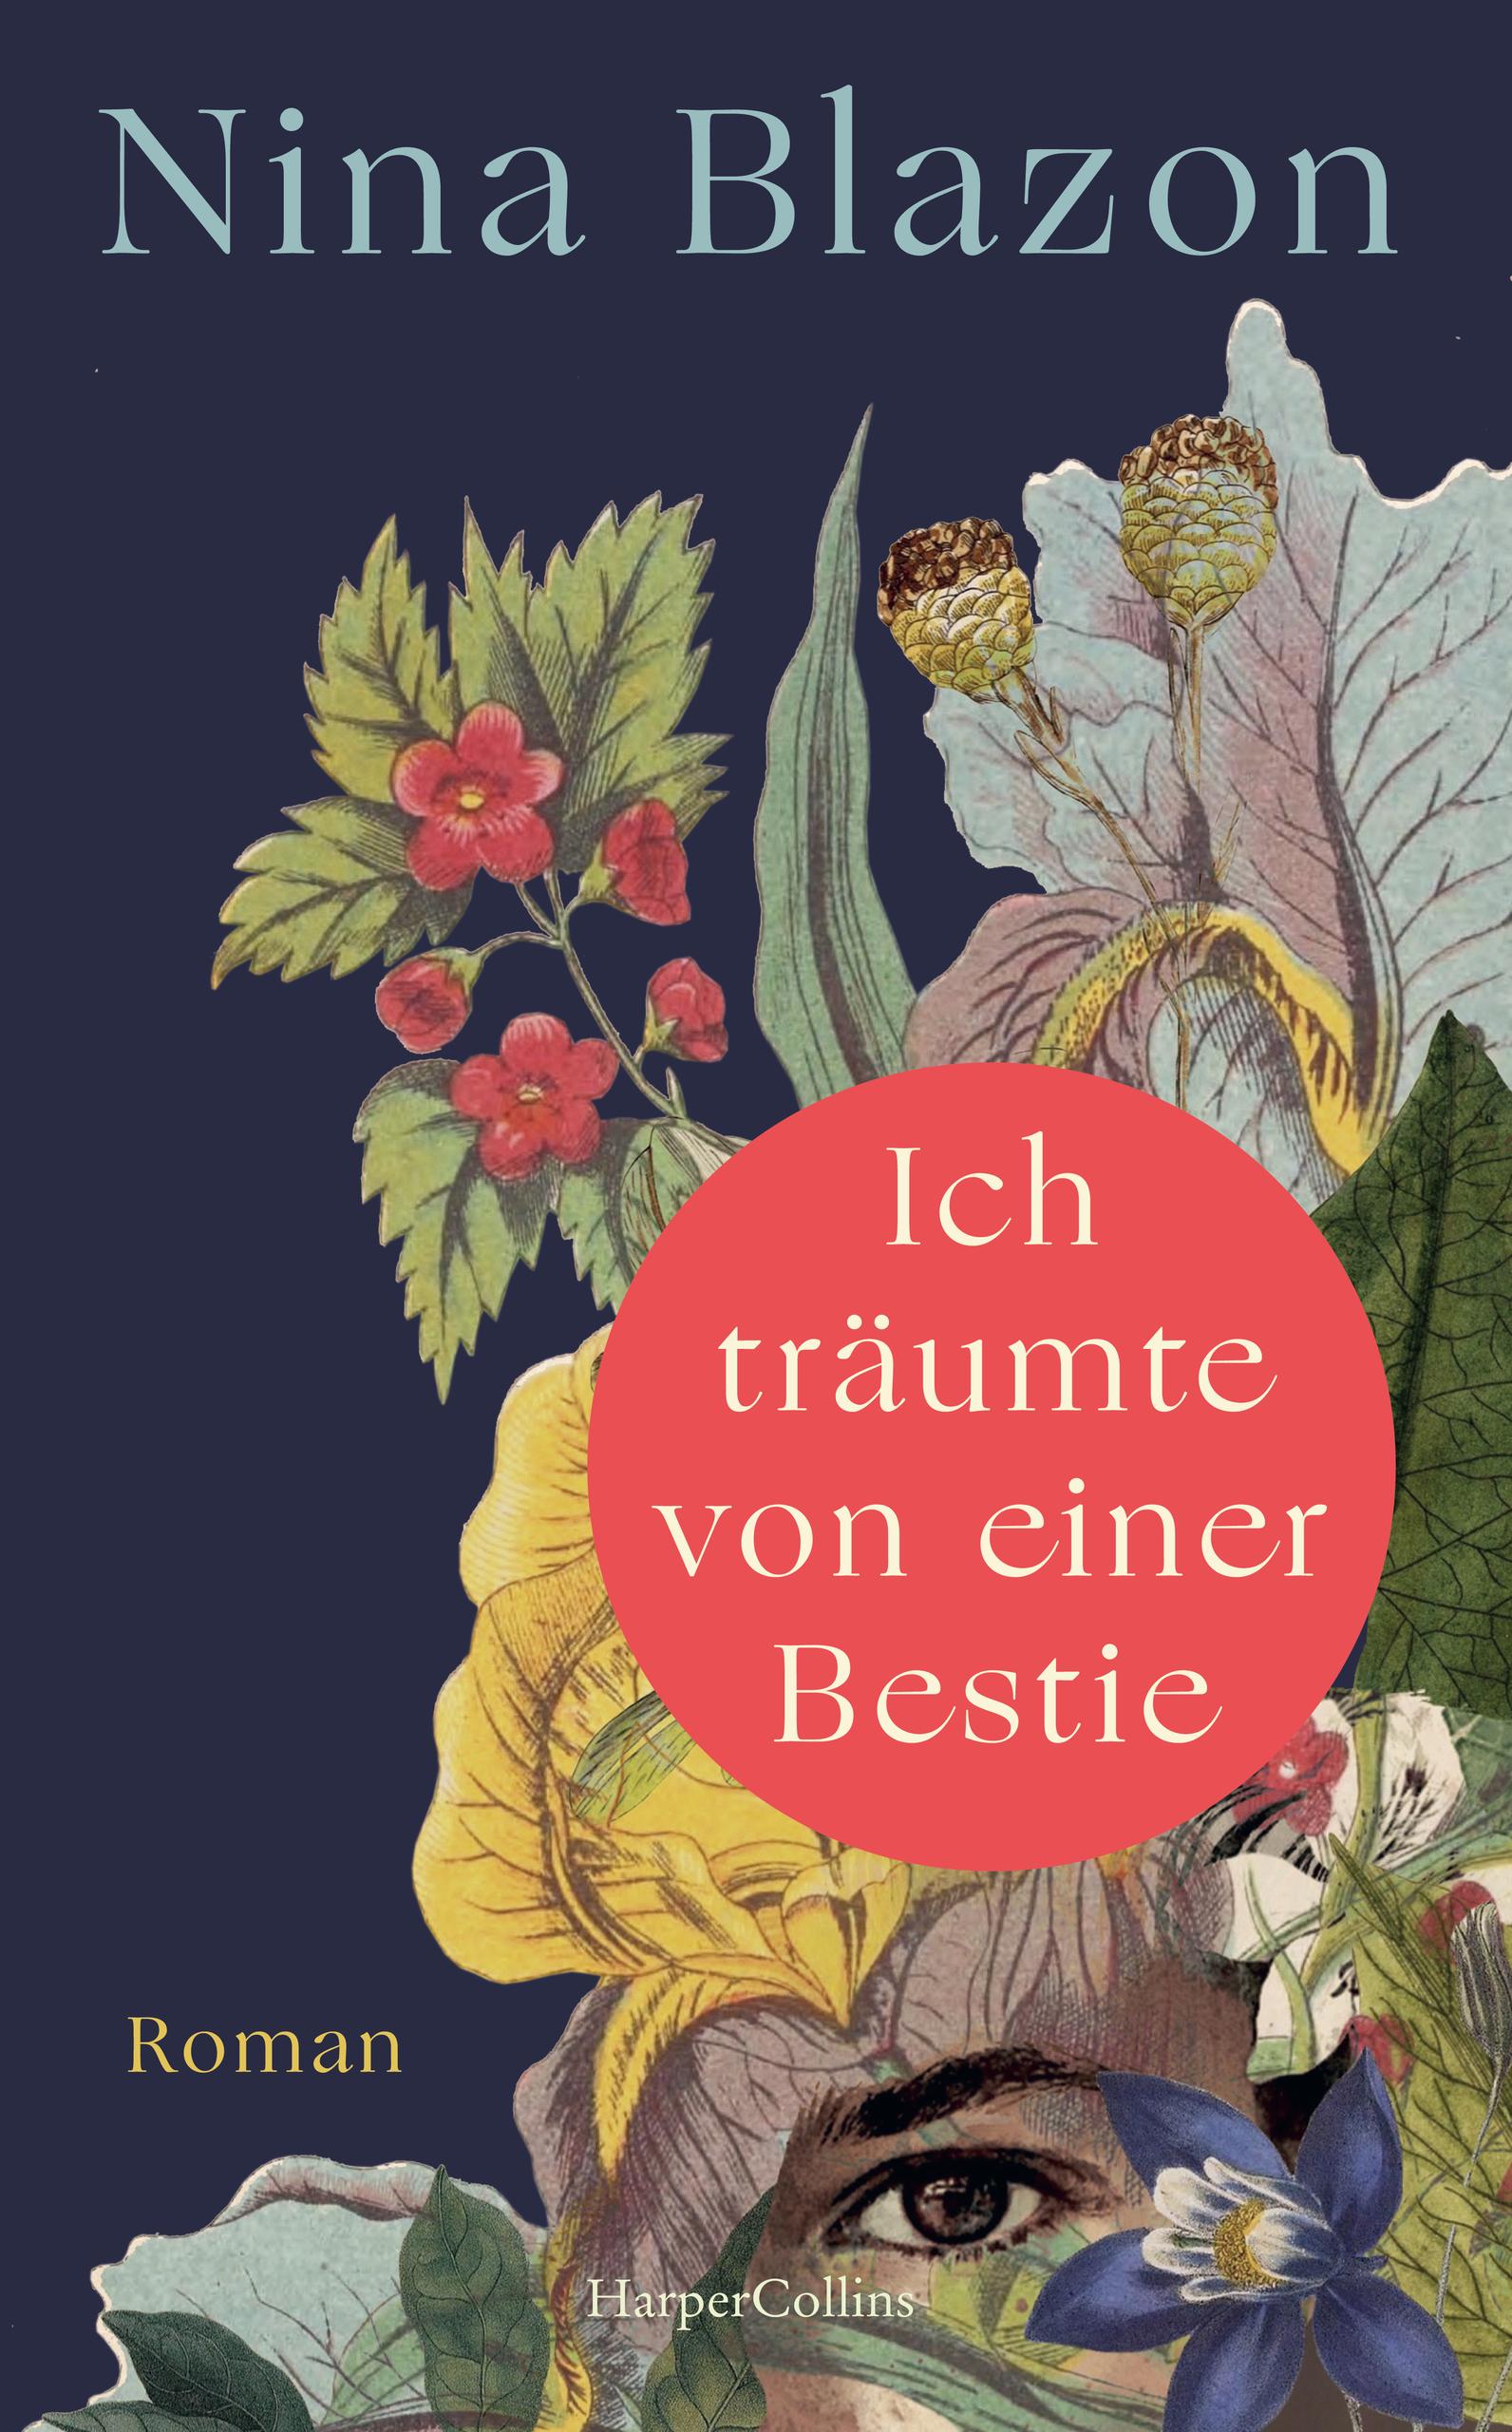 Nina Blazon liest im Rahmen der Baden-Württembergischen Literaturtage 